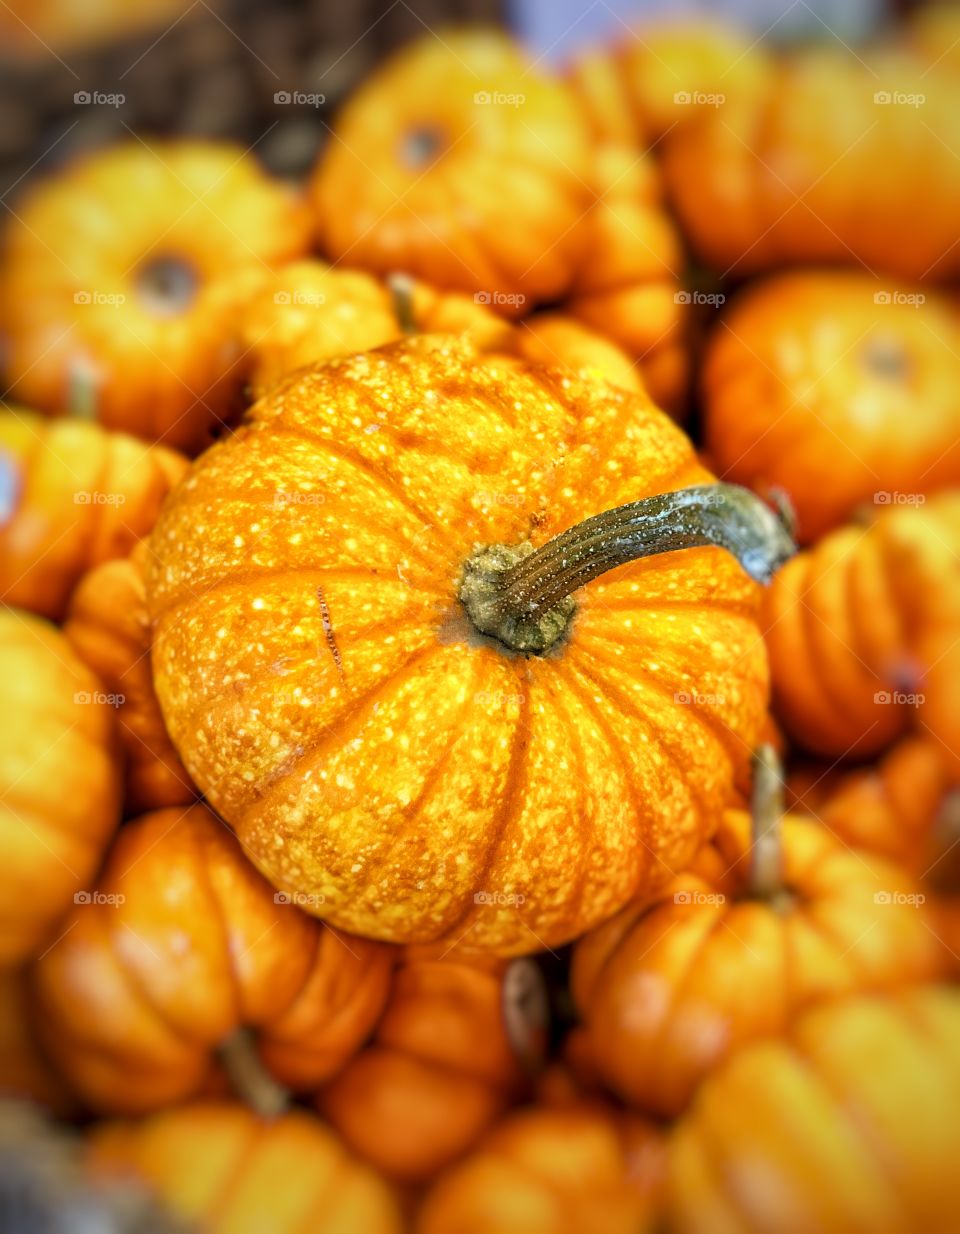 Fall Pumpkins in Abundance!